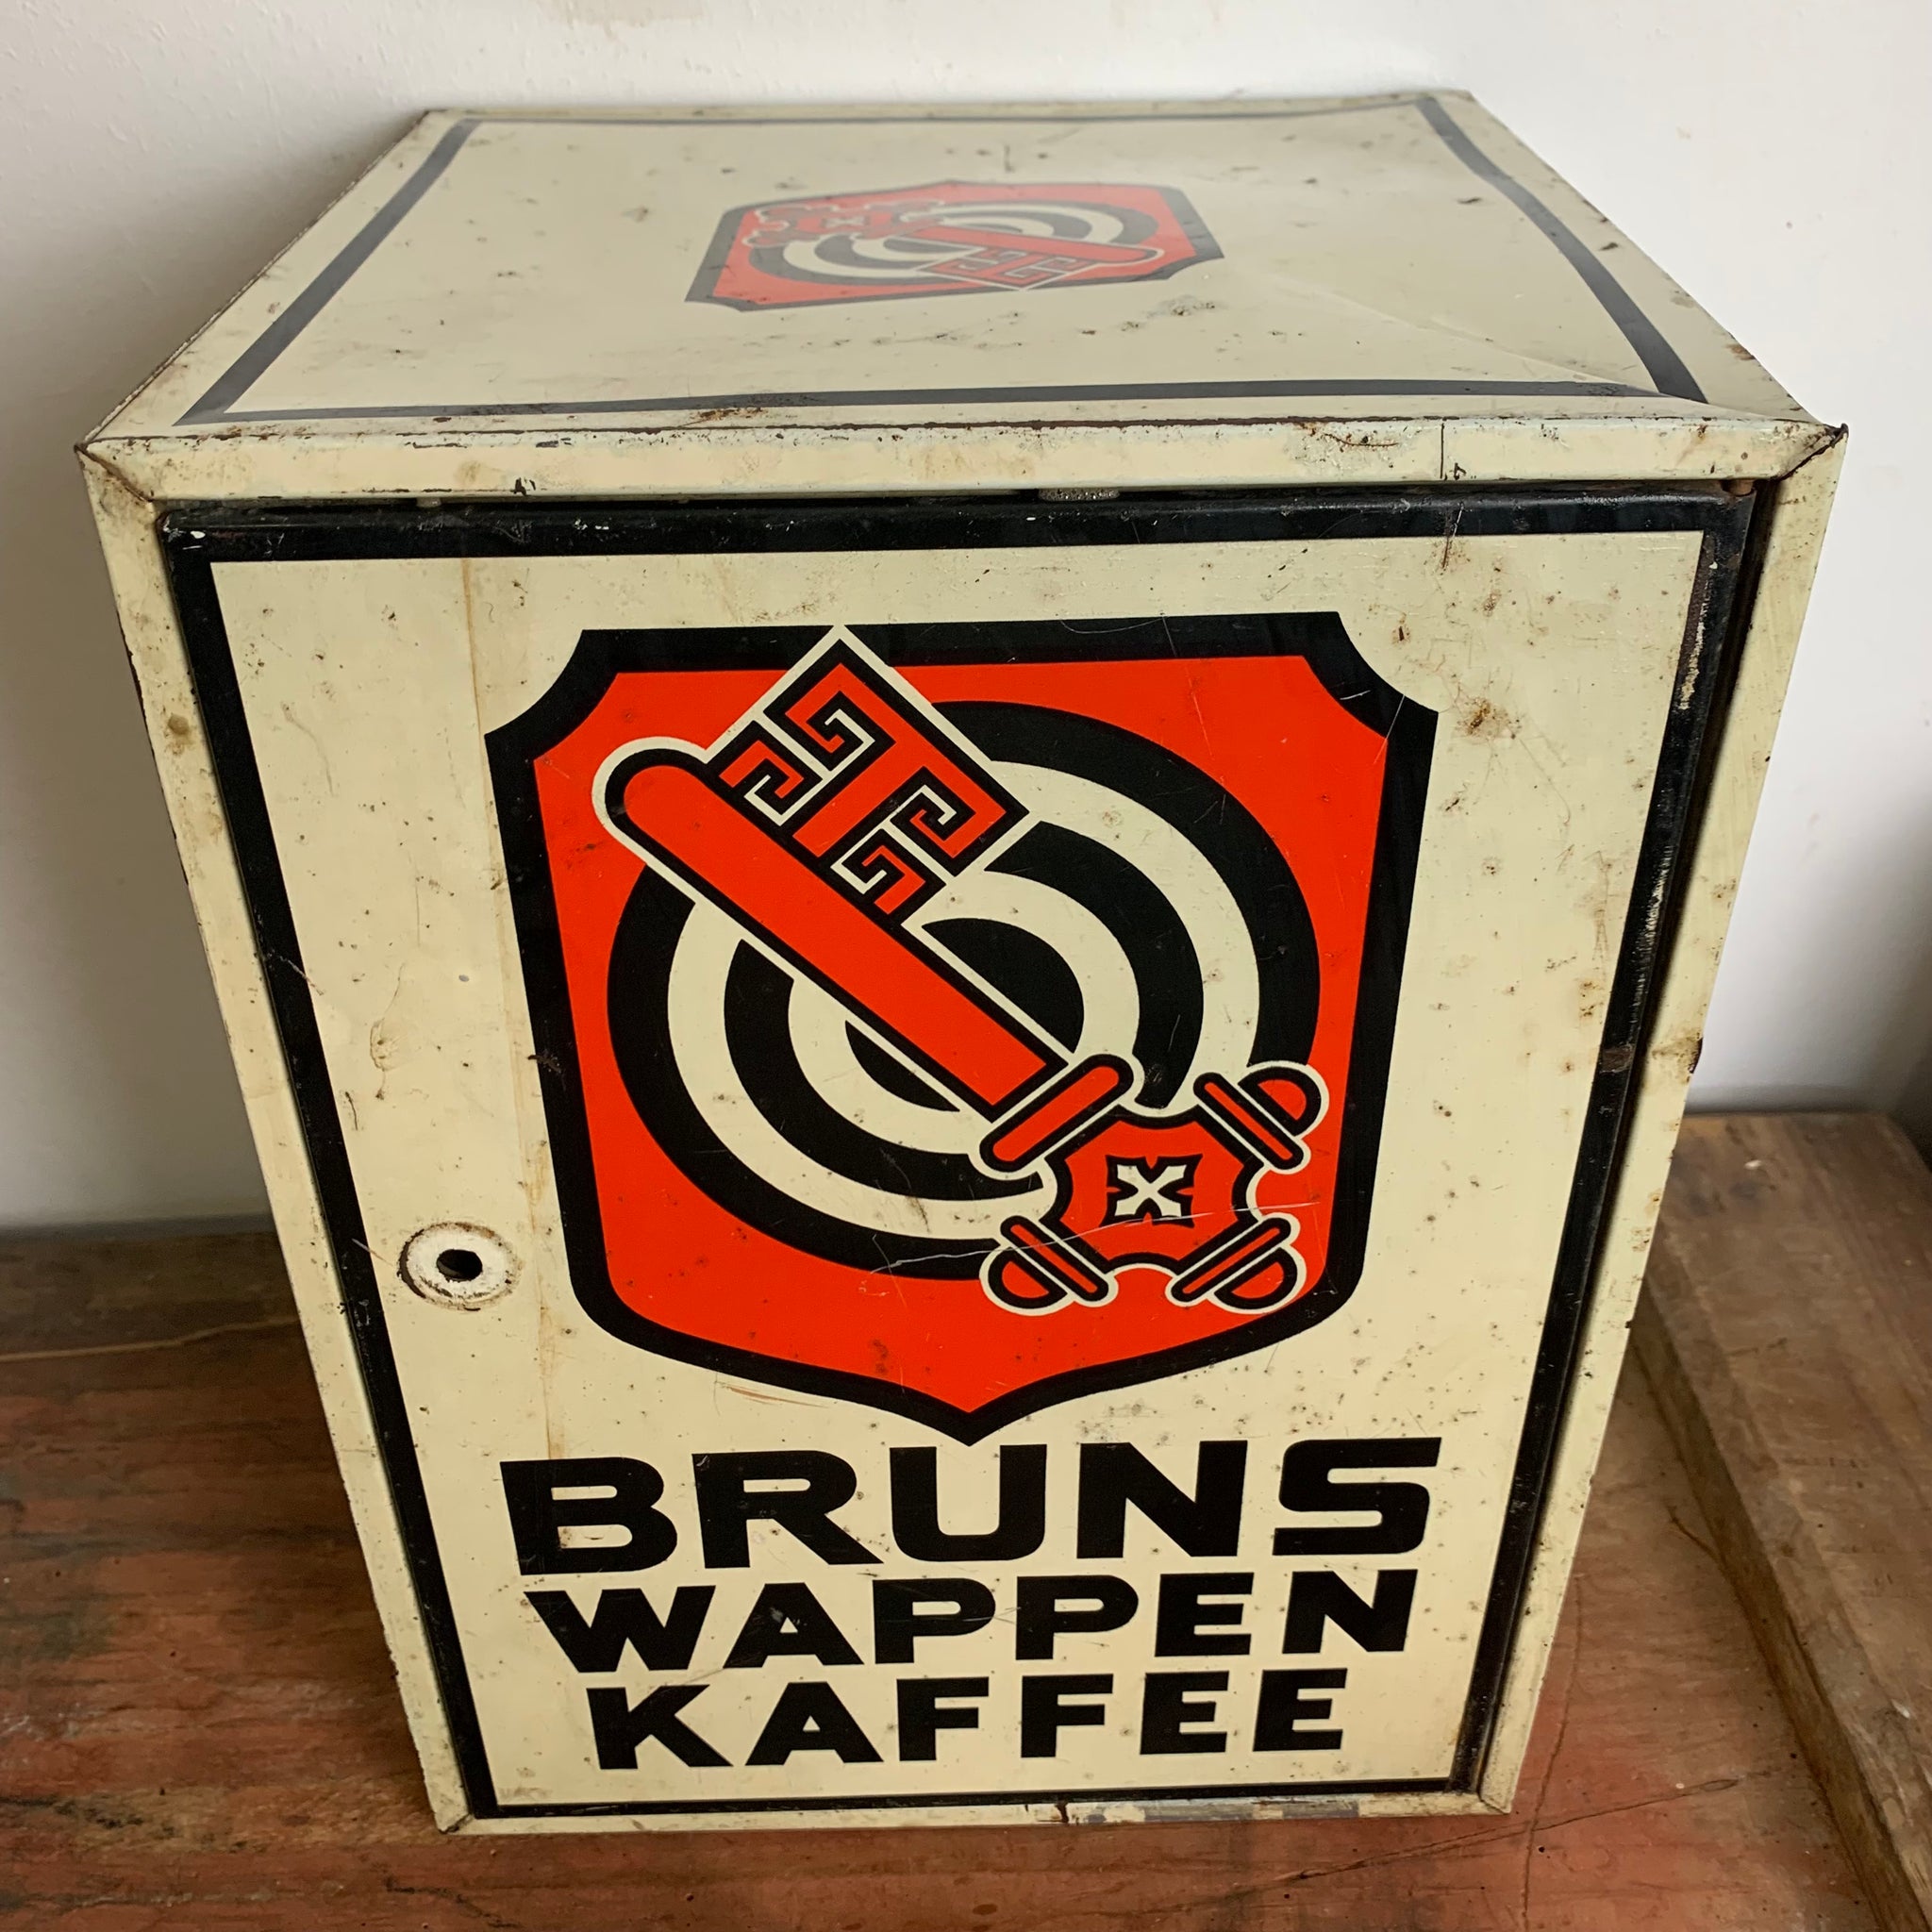 Kaffeeschrank von Bruns Wappen Kaffee